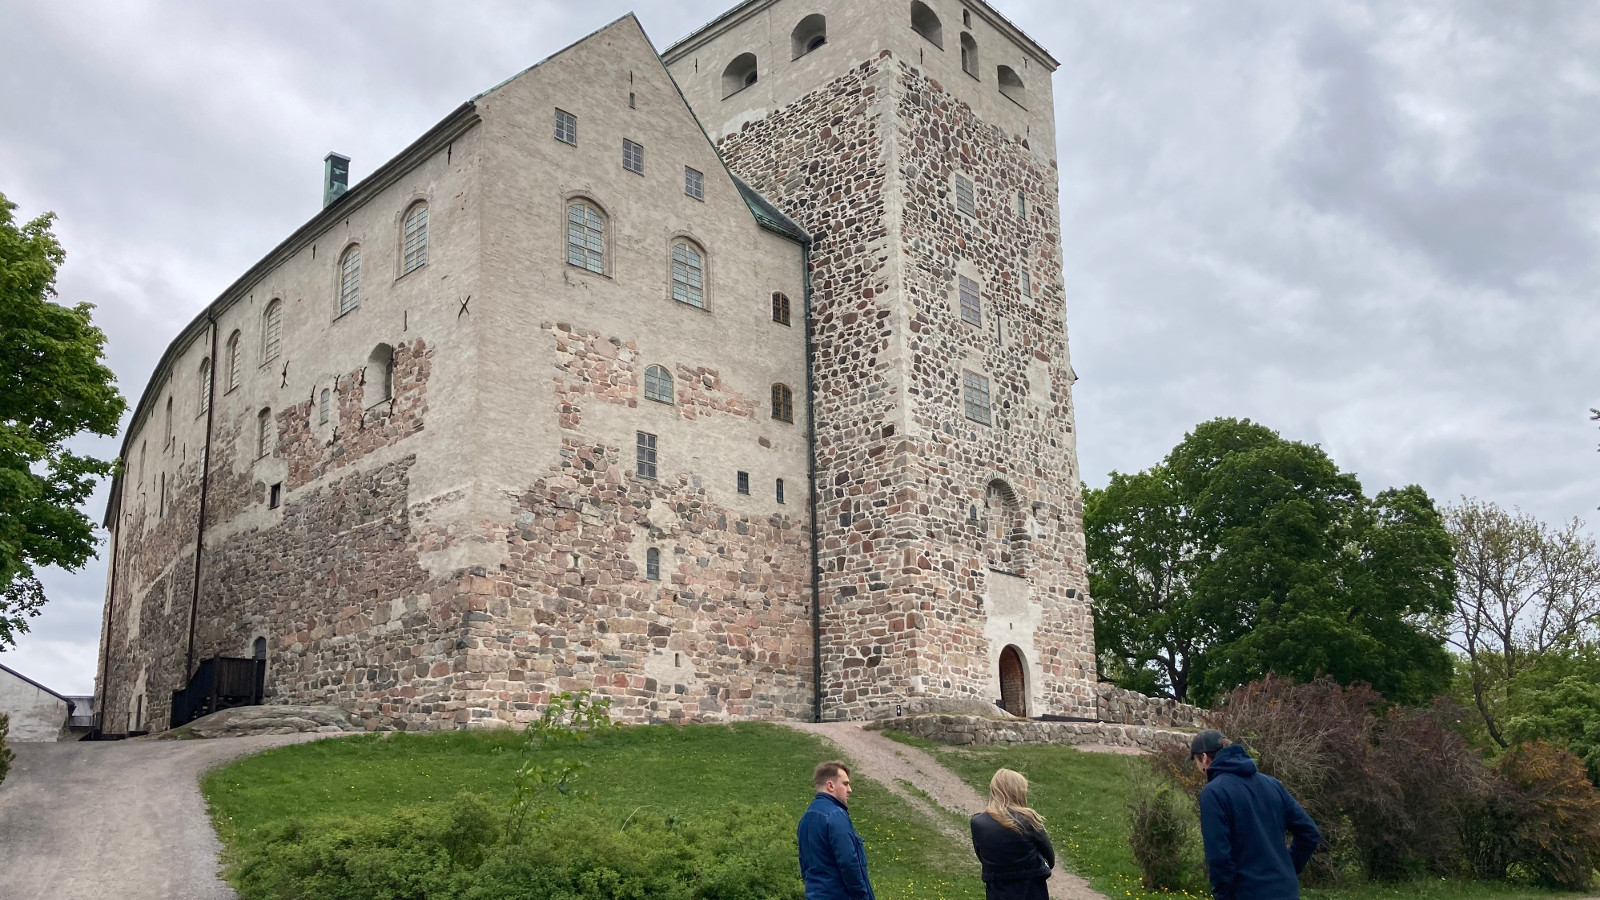 Kuvassa on harmaa Turun linna kuvattuna yläviistoon ja vihreää nurmikenttää.  Alhaalla näkyy kaksi miestä ja nainen katsomassa linnaa.